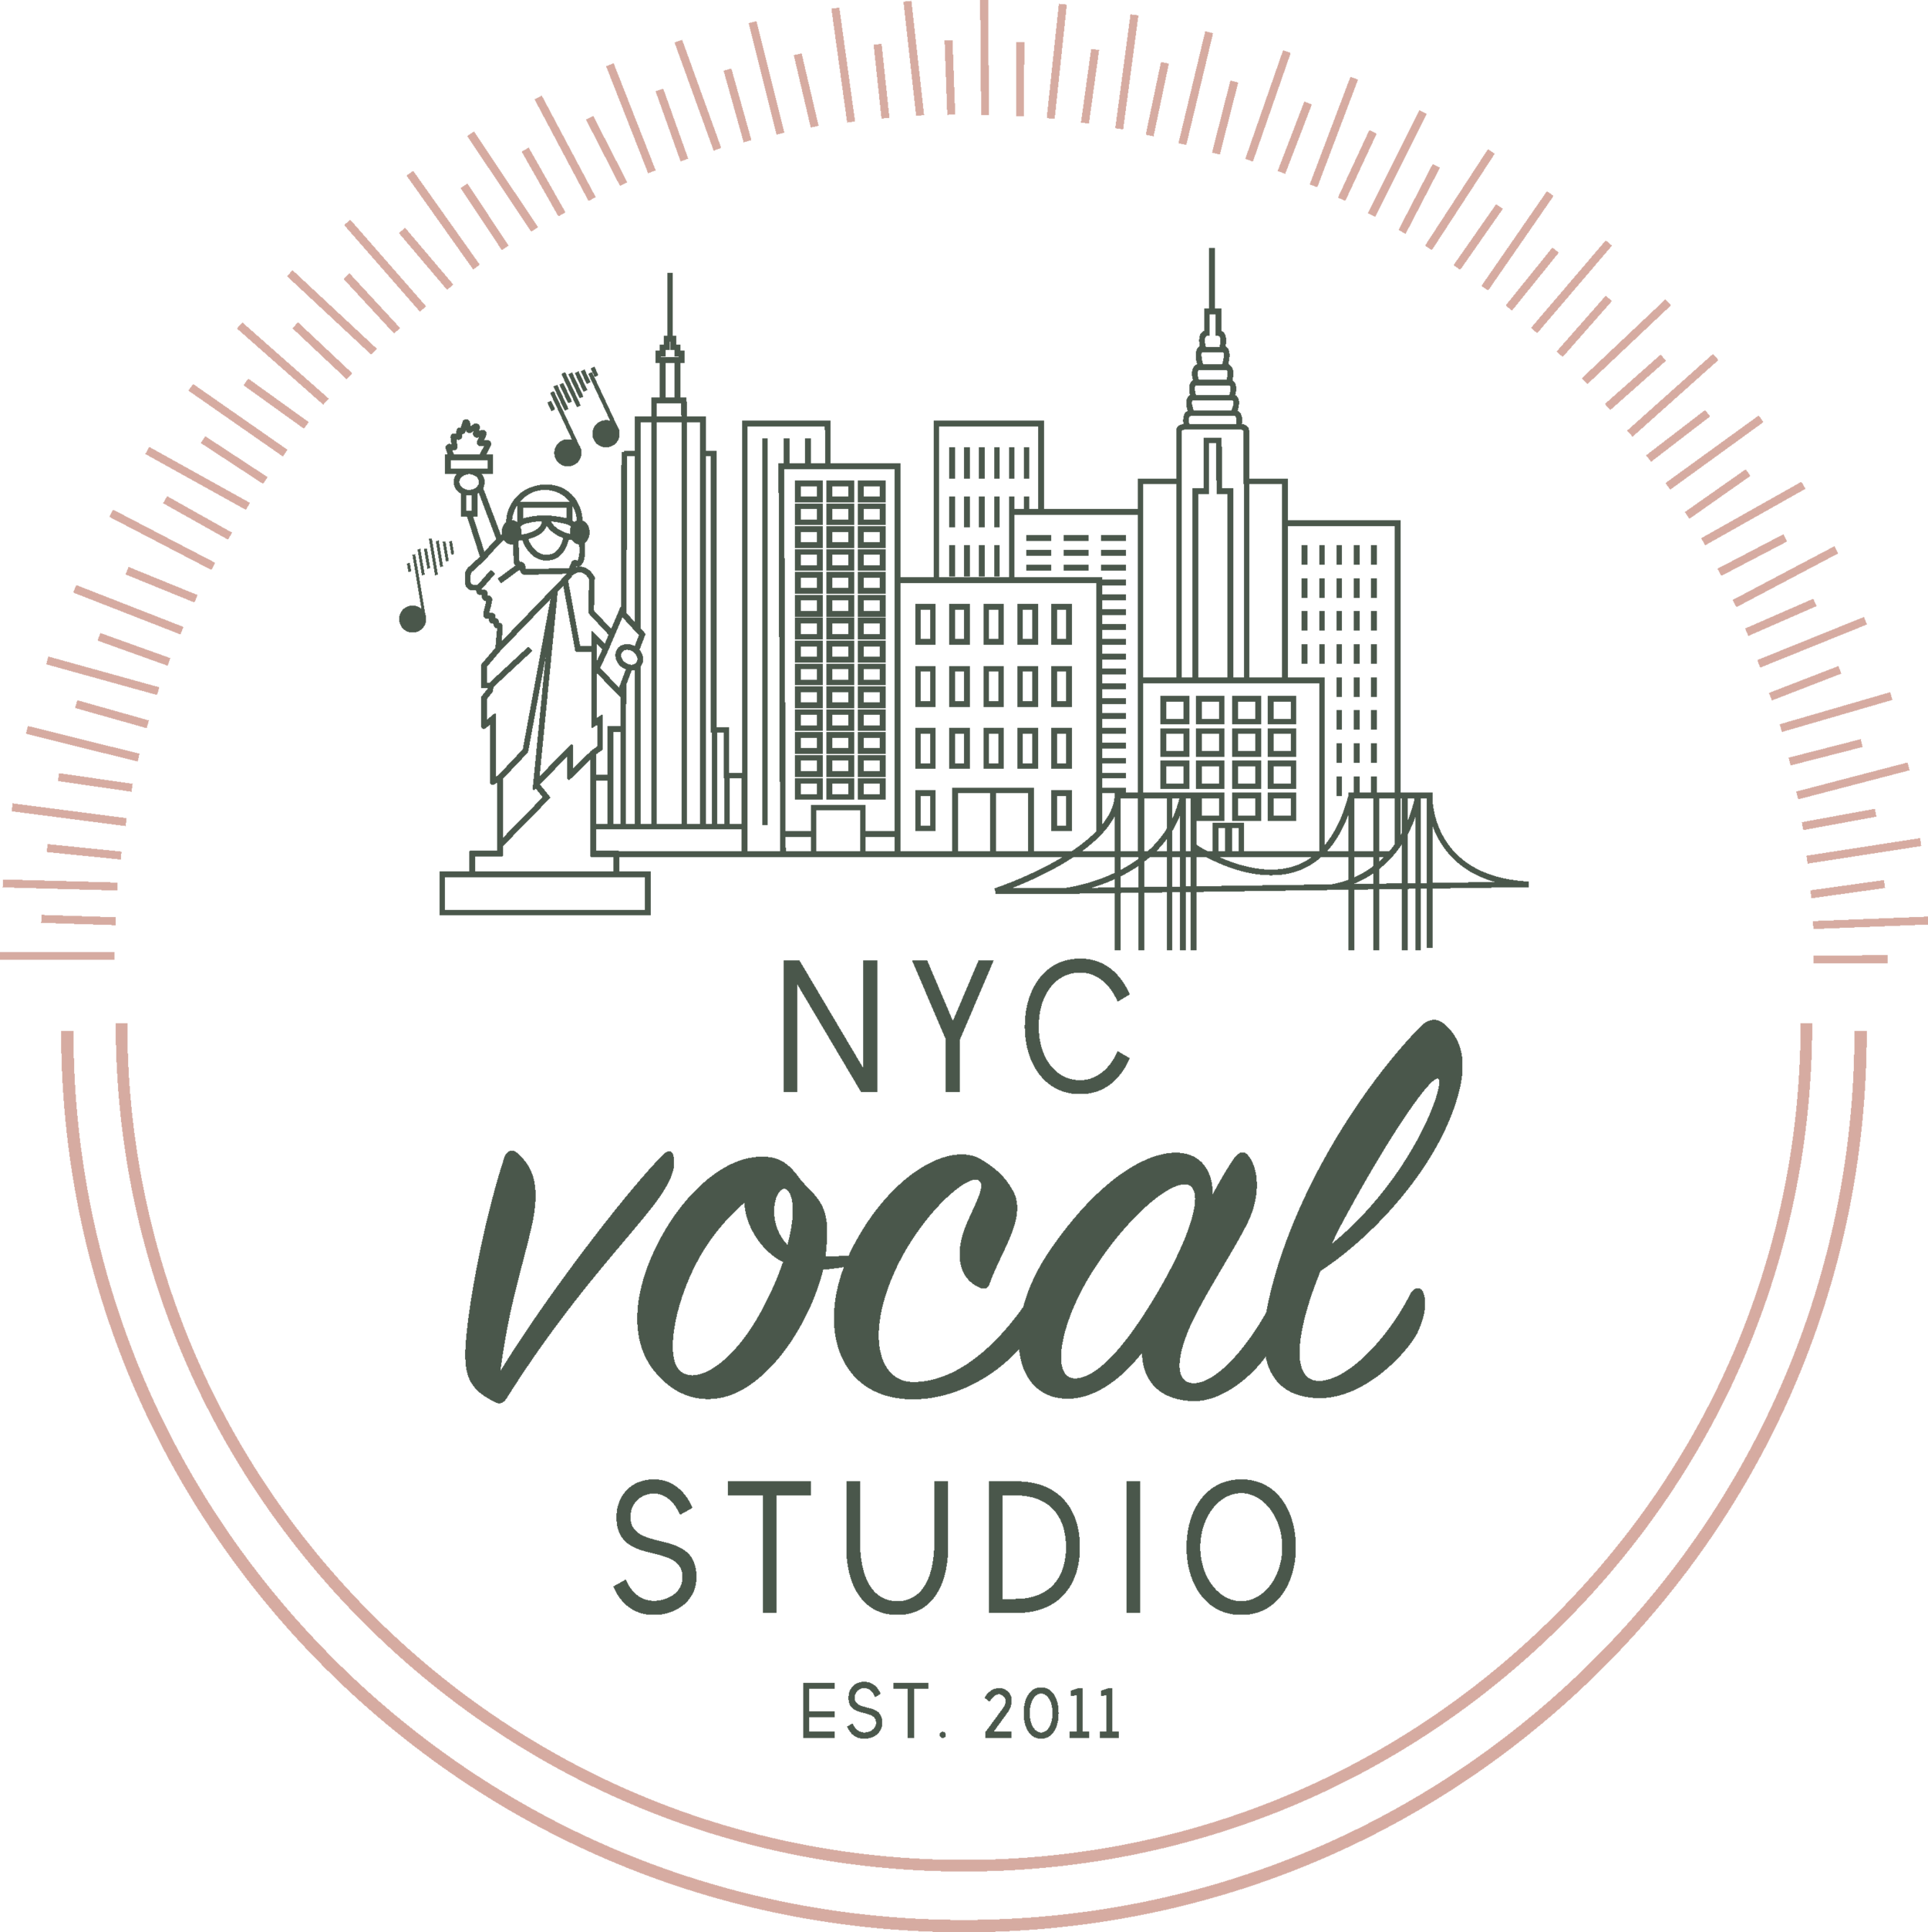 NYC Vocal Studio